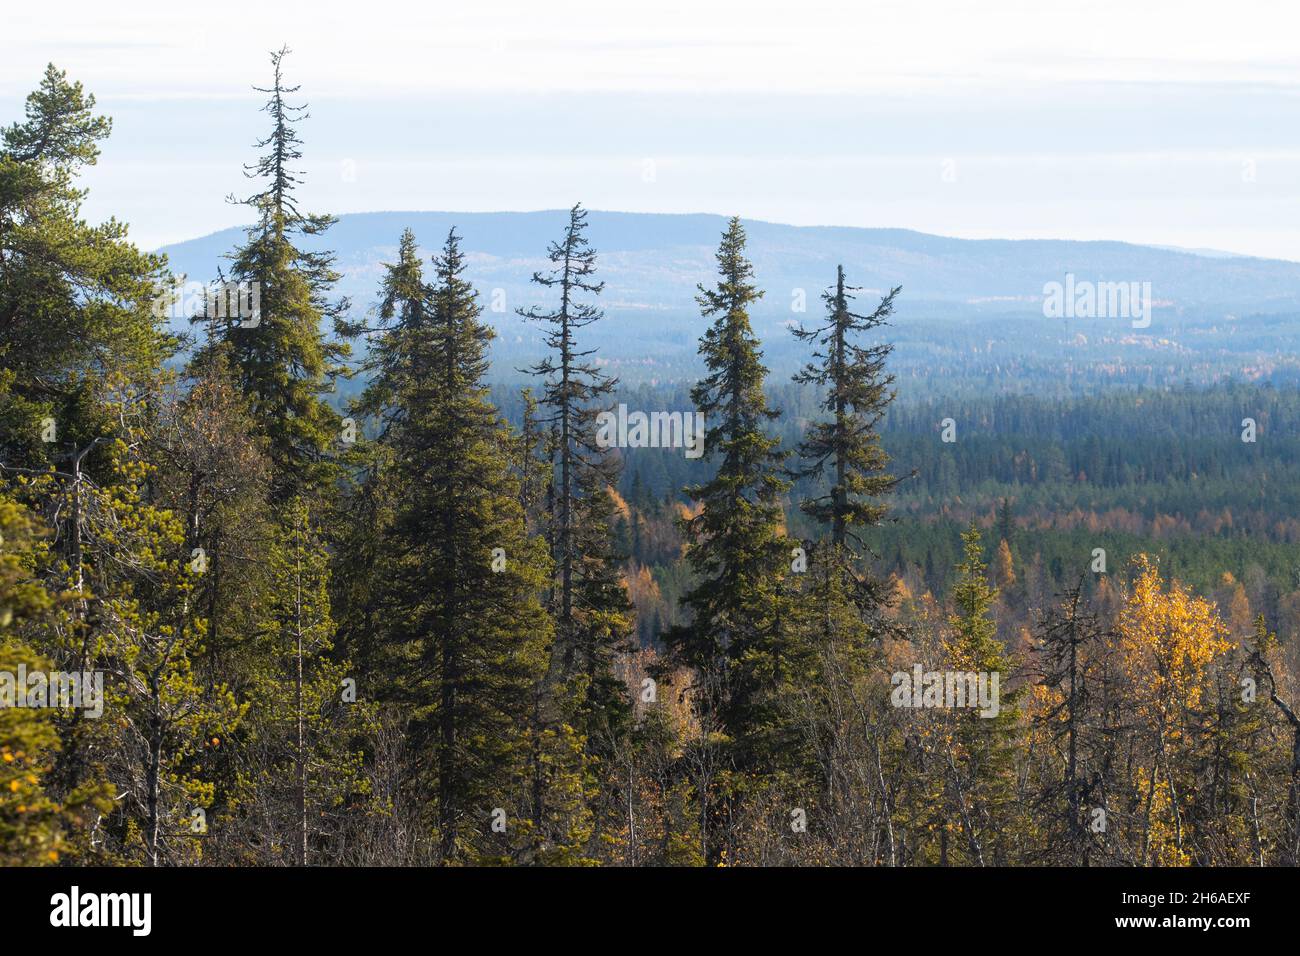 Vue sur la forêt de taïga automnale avec des collines et des montagnes tirées de Valtavaara colline près de Kuusamo, la nature finlandaise, l'Europe du Nord. Banque D'Images